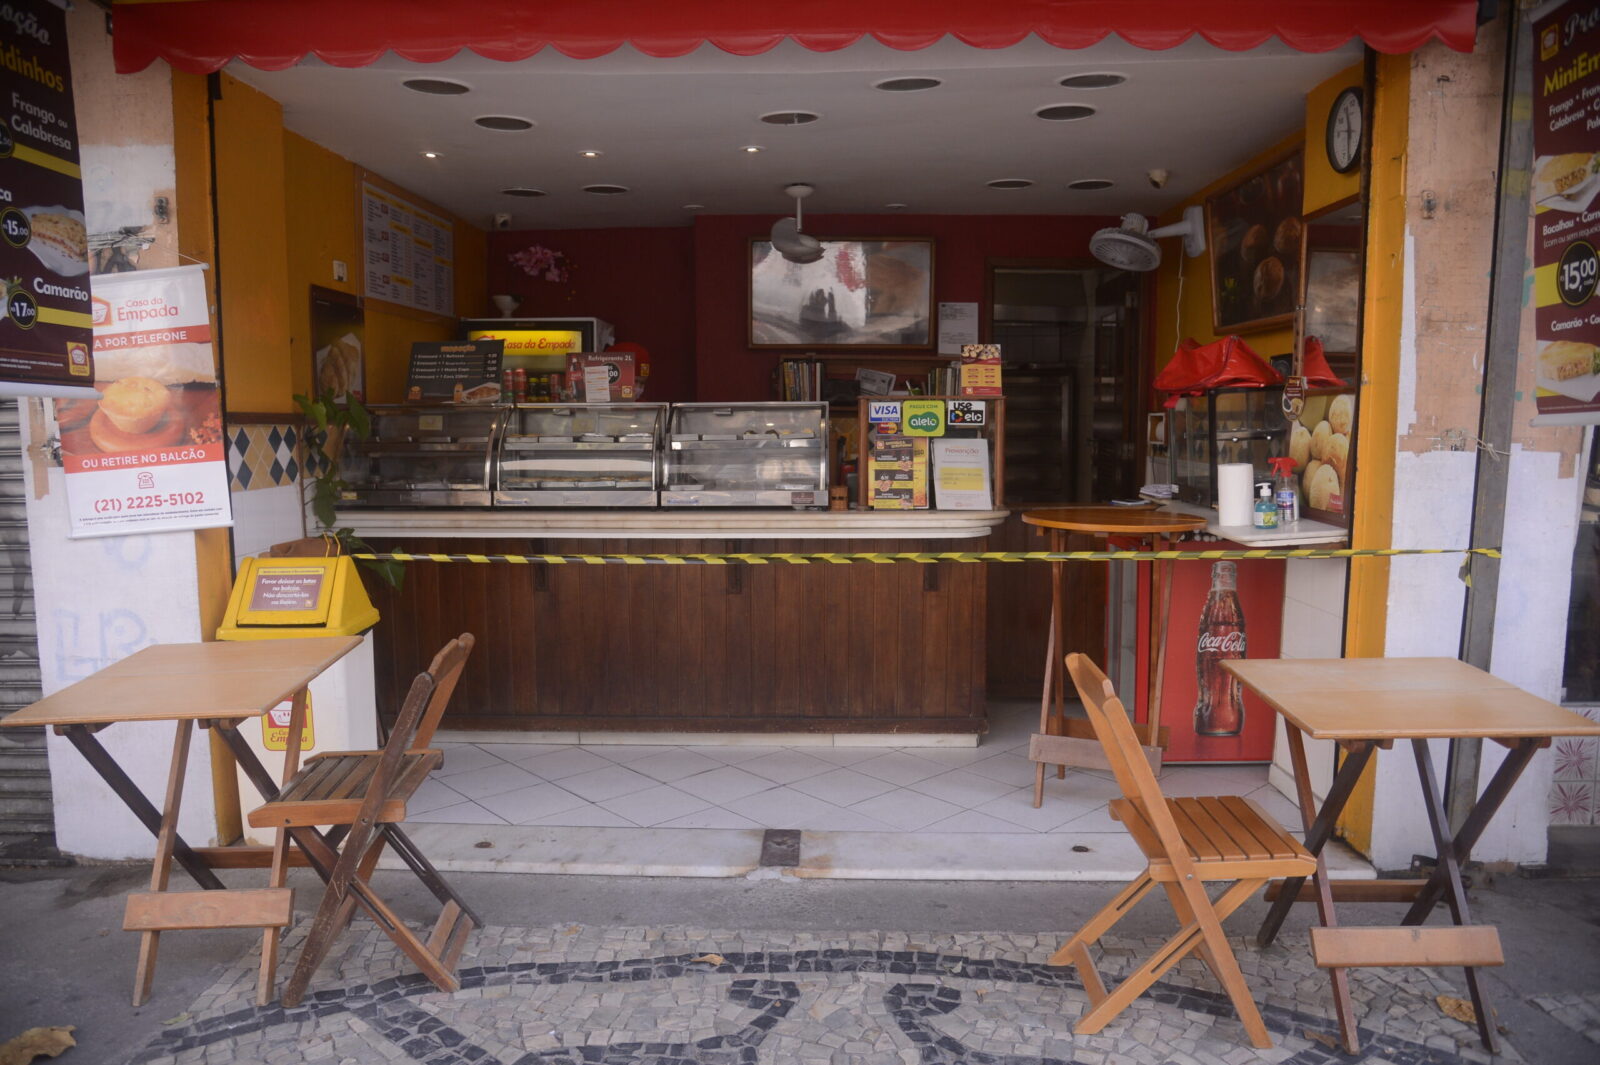 Lanchonetes, bares e restaurantes do Rio de Janeiro reabrem com restrição de horário, lotação e distância entre mesas. Por: Tânia Rêgo/Agência Brasil